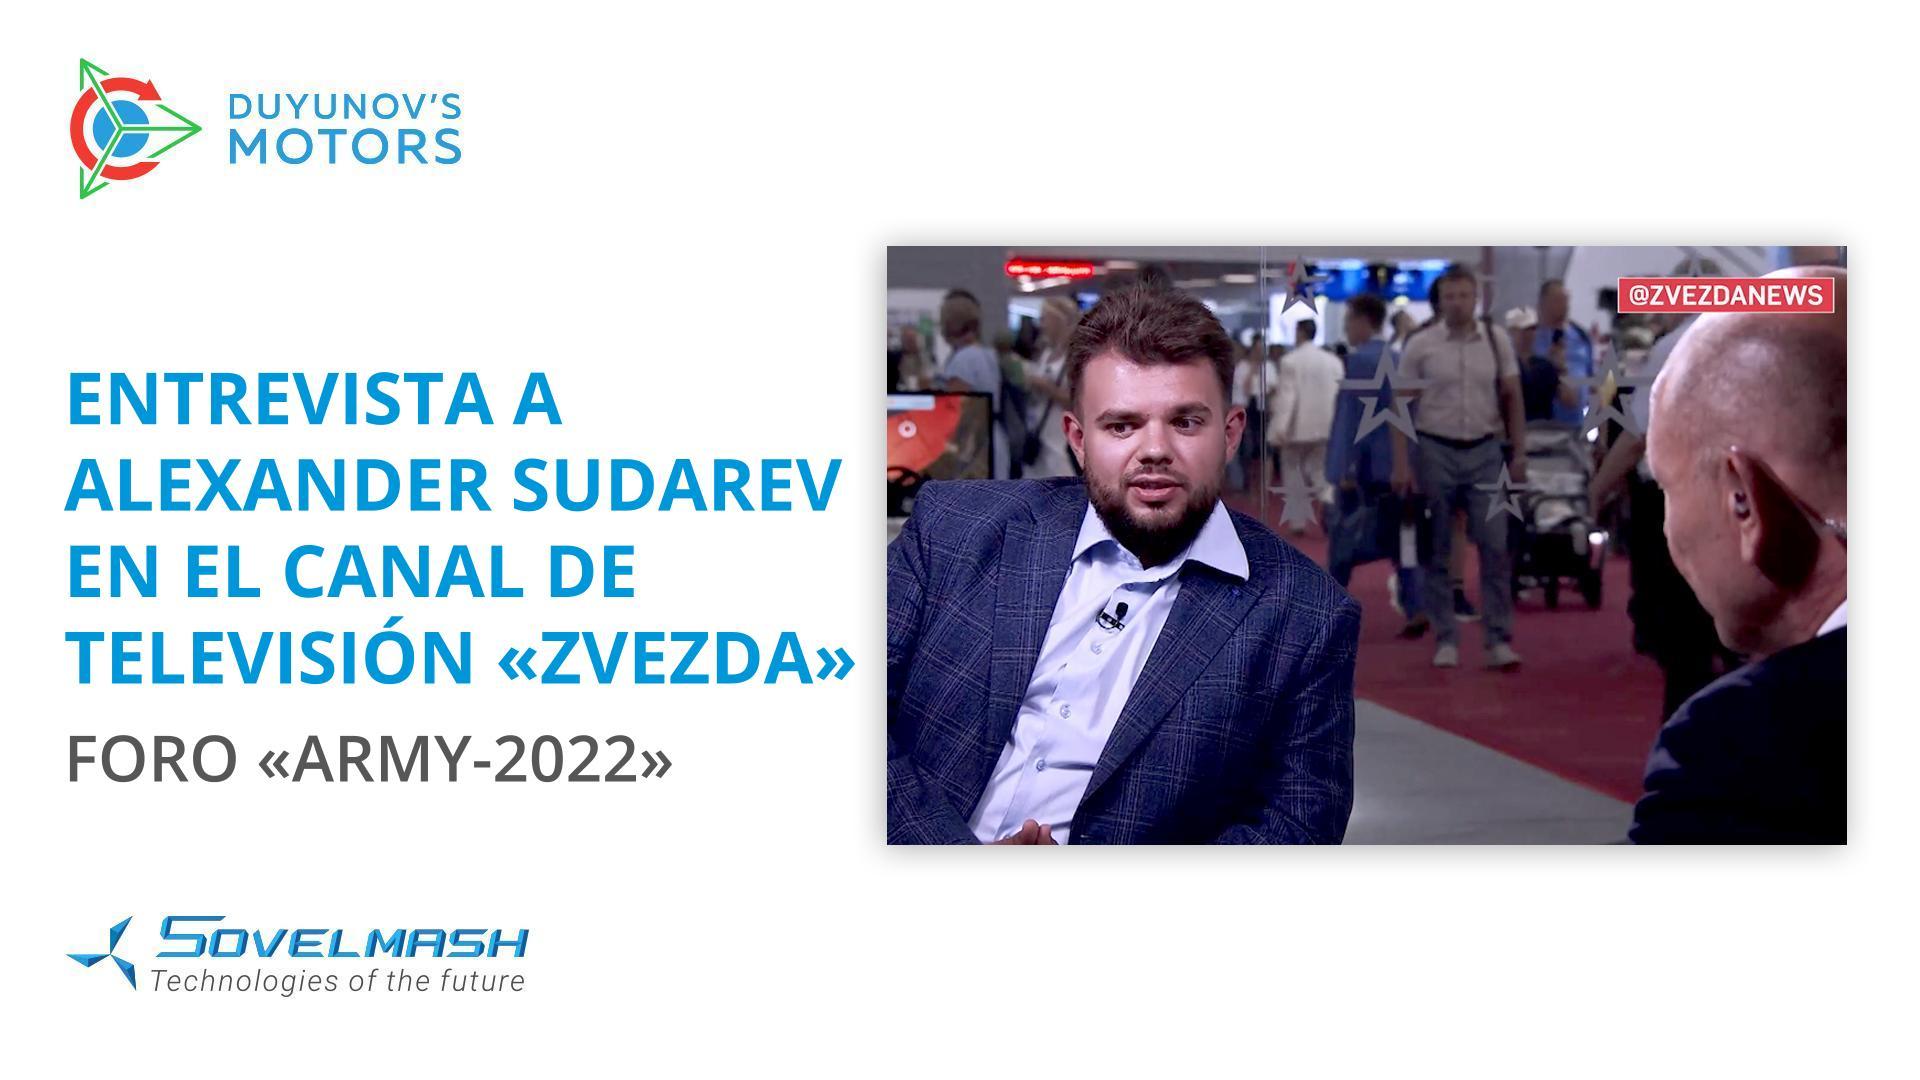 Entrevista a Alexander Sudarev en el canal de televisión "Zvezda" | Foro "Army-2022"